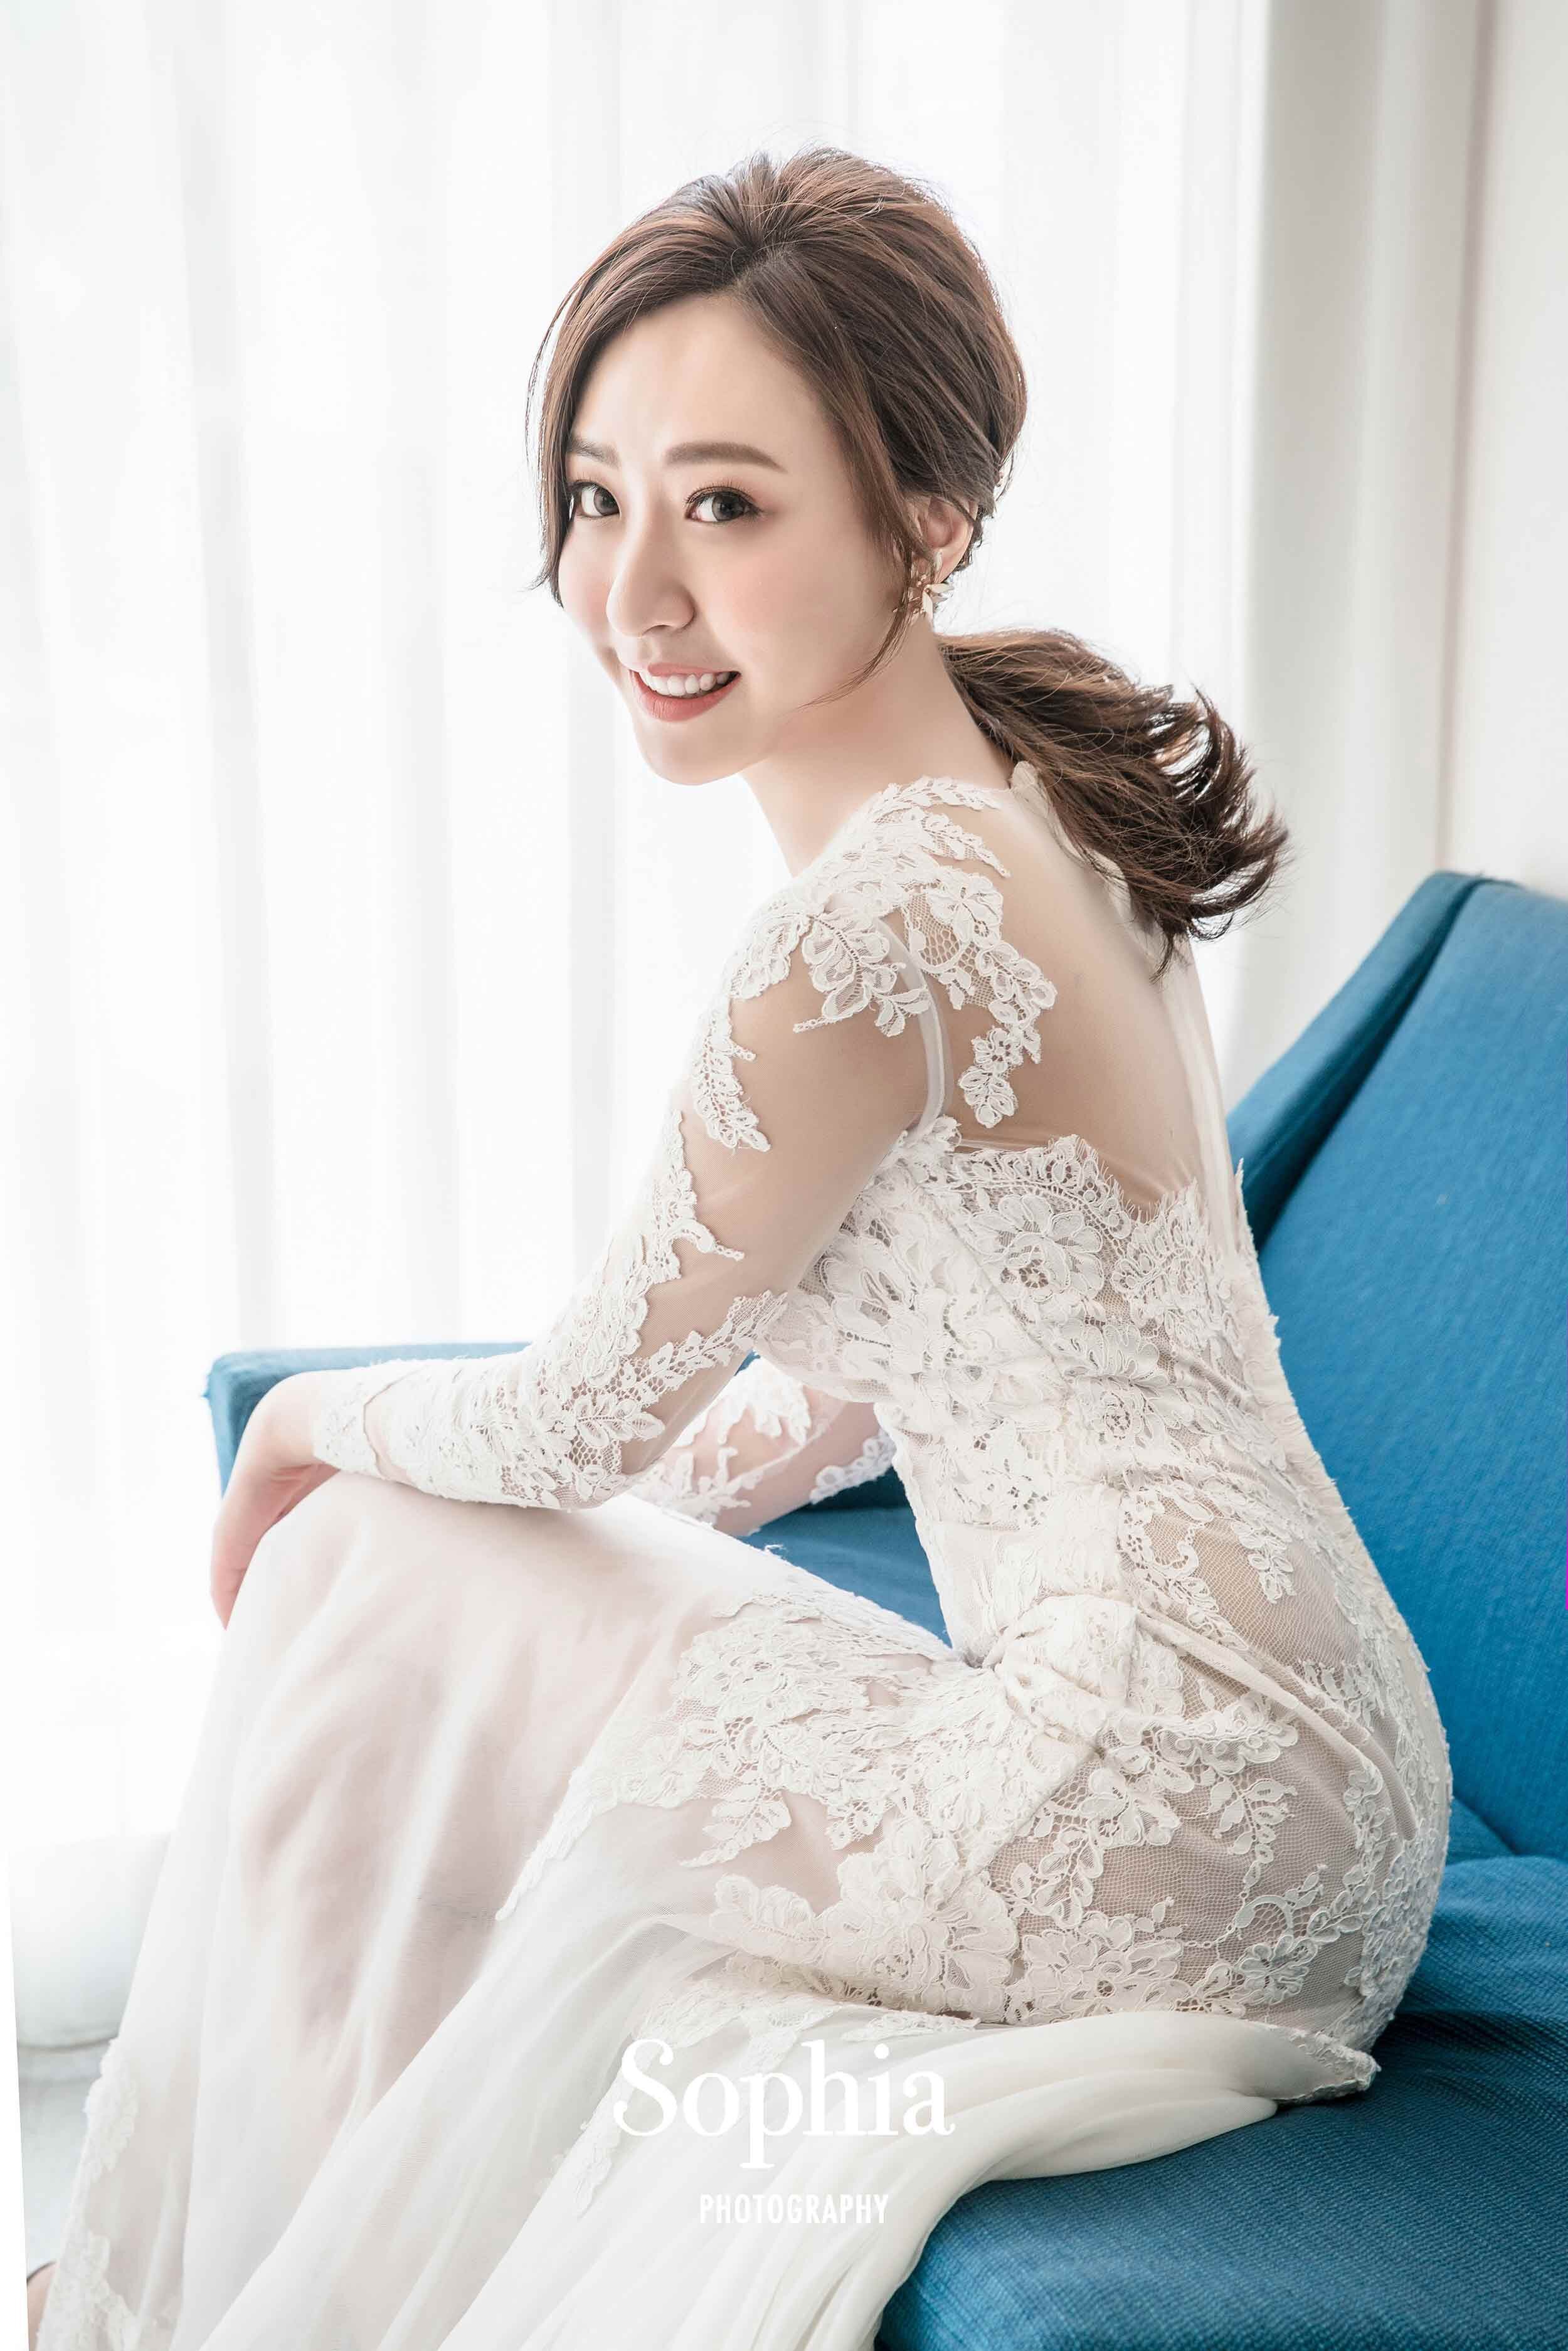  蘇菲雅婚紗-外景婚紗照-婚紗基地-韓系 